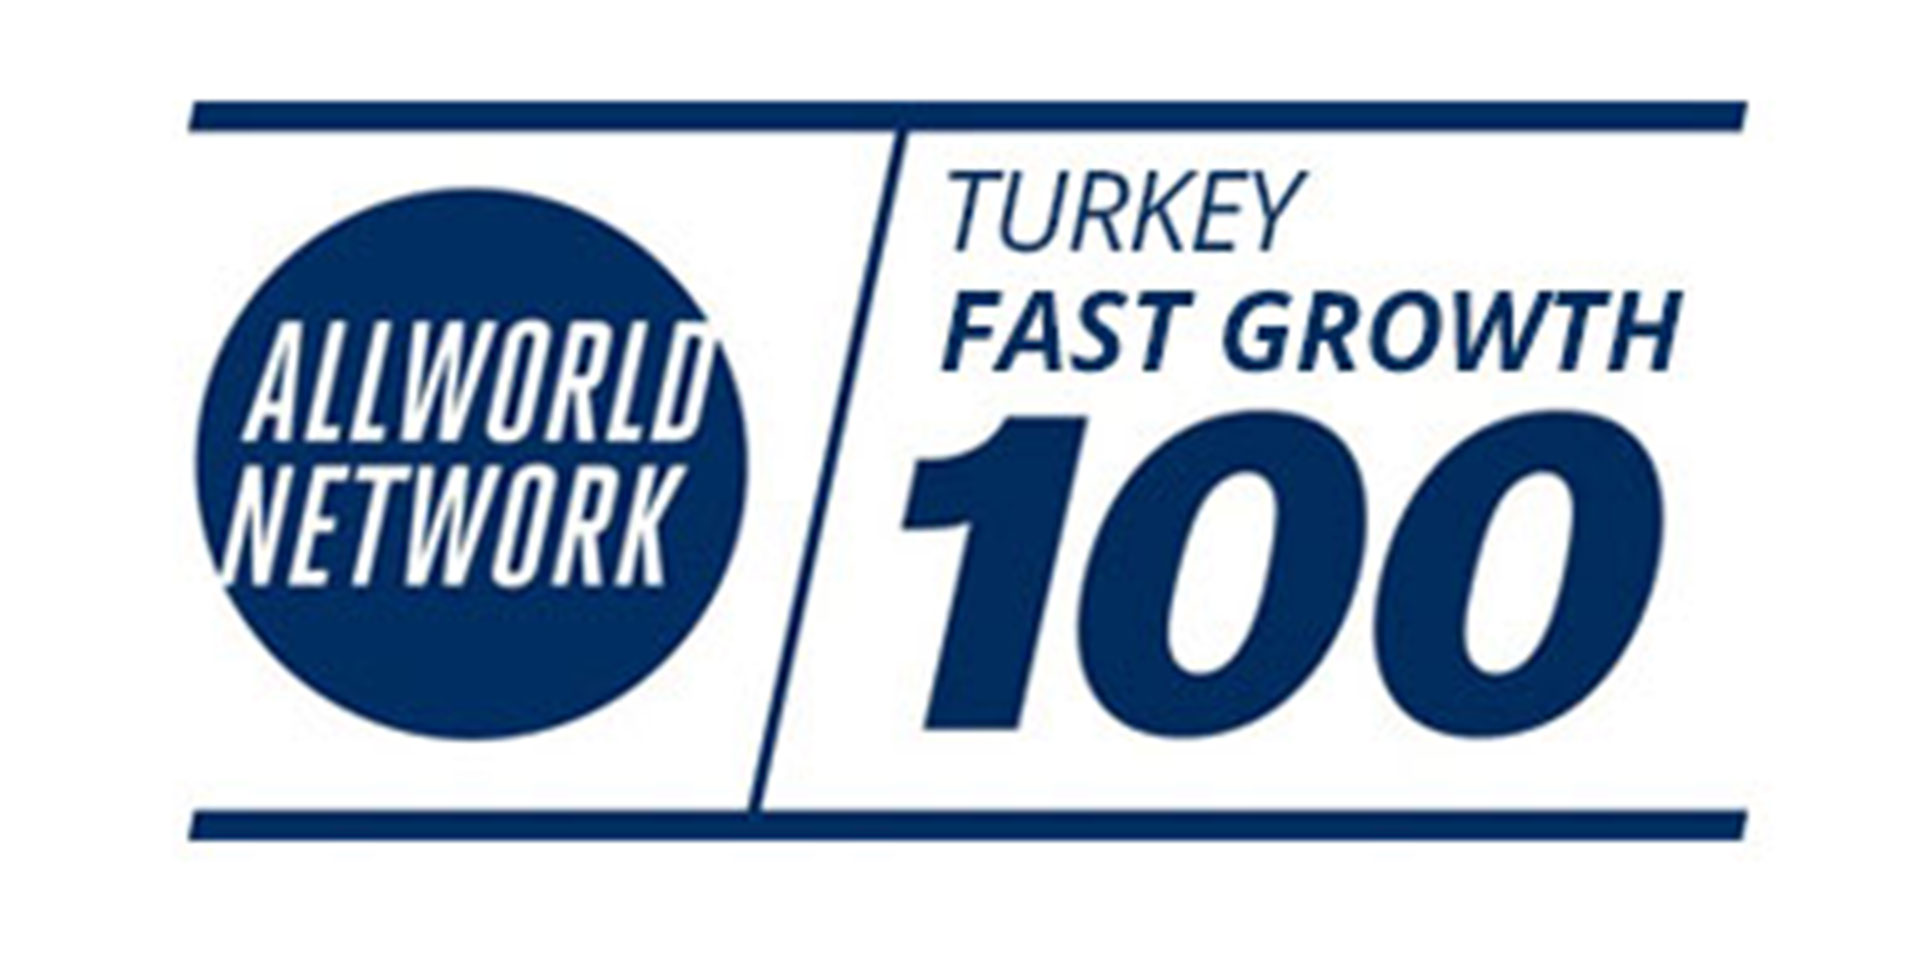 57 100 am schnellsten wachsenden Unternehmen in der Türkei Wettbewerb